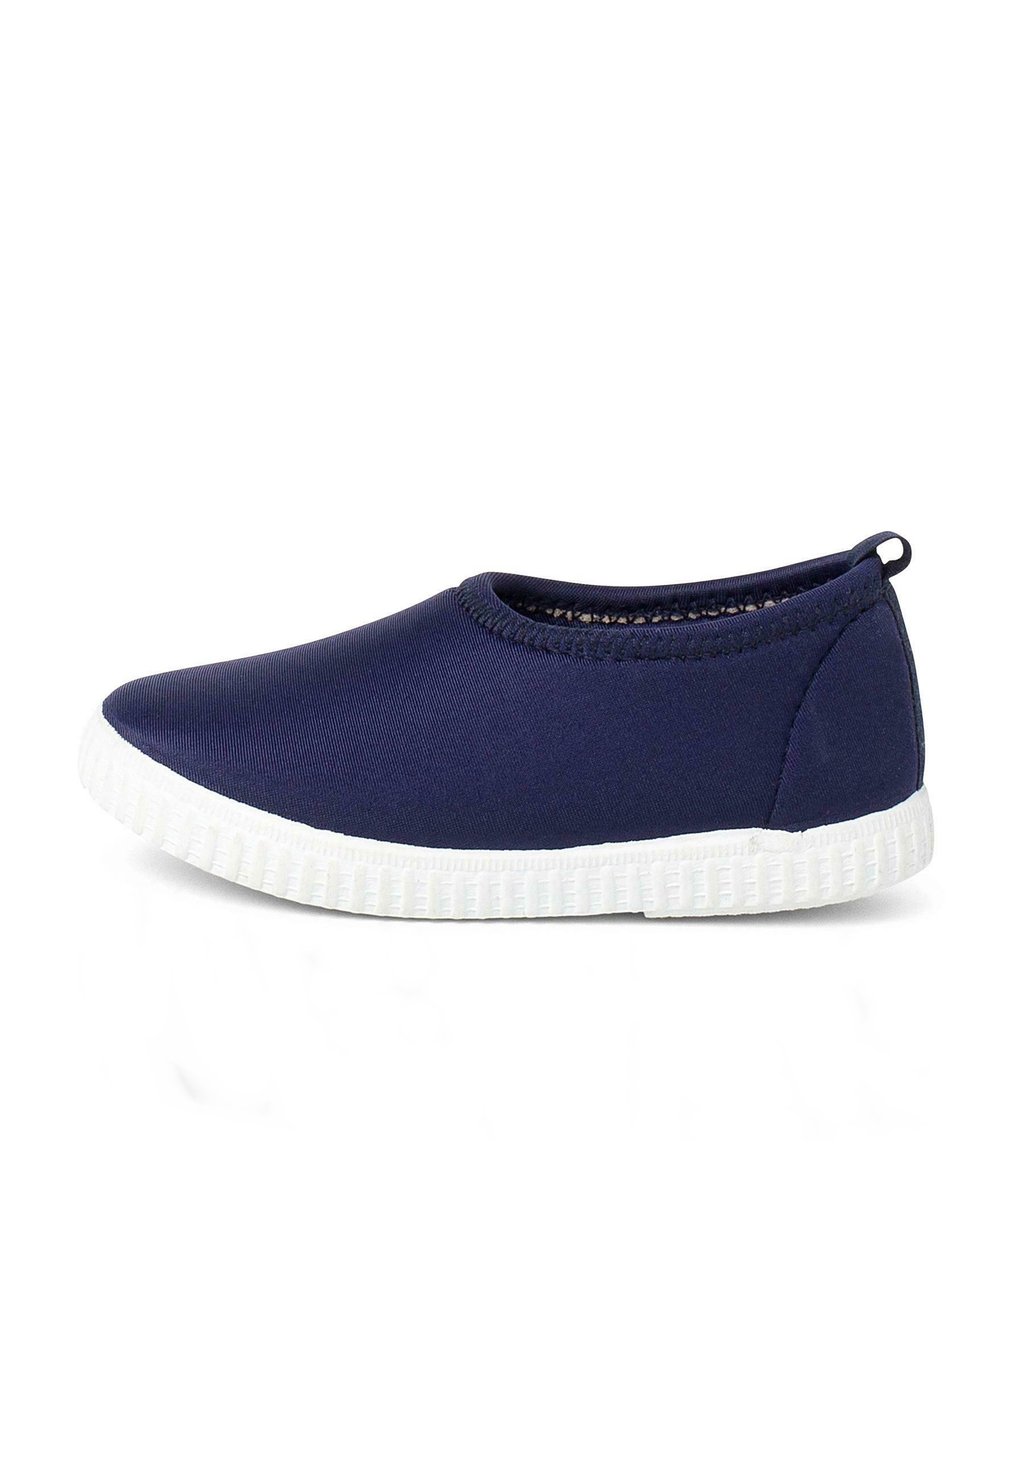 Низкие кроссовки Tipo Pisamonas, цвет azul marino низкие кроссовки zapatillas mtng цвет azul marino